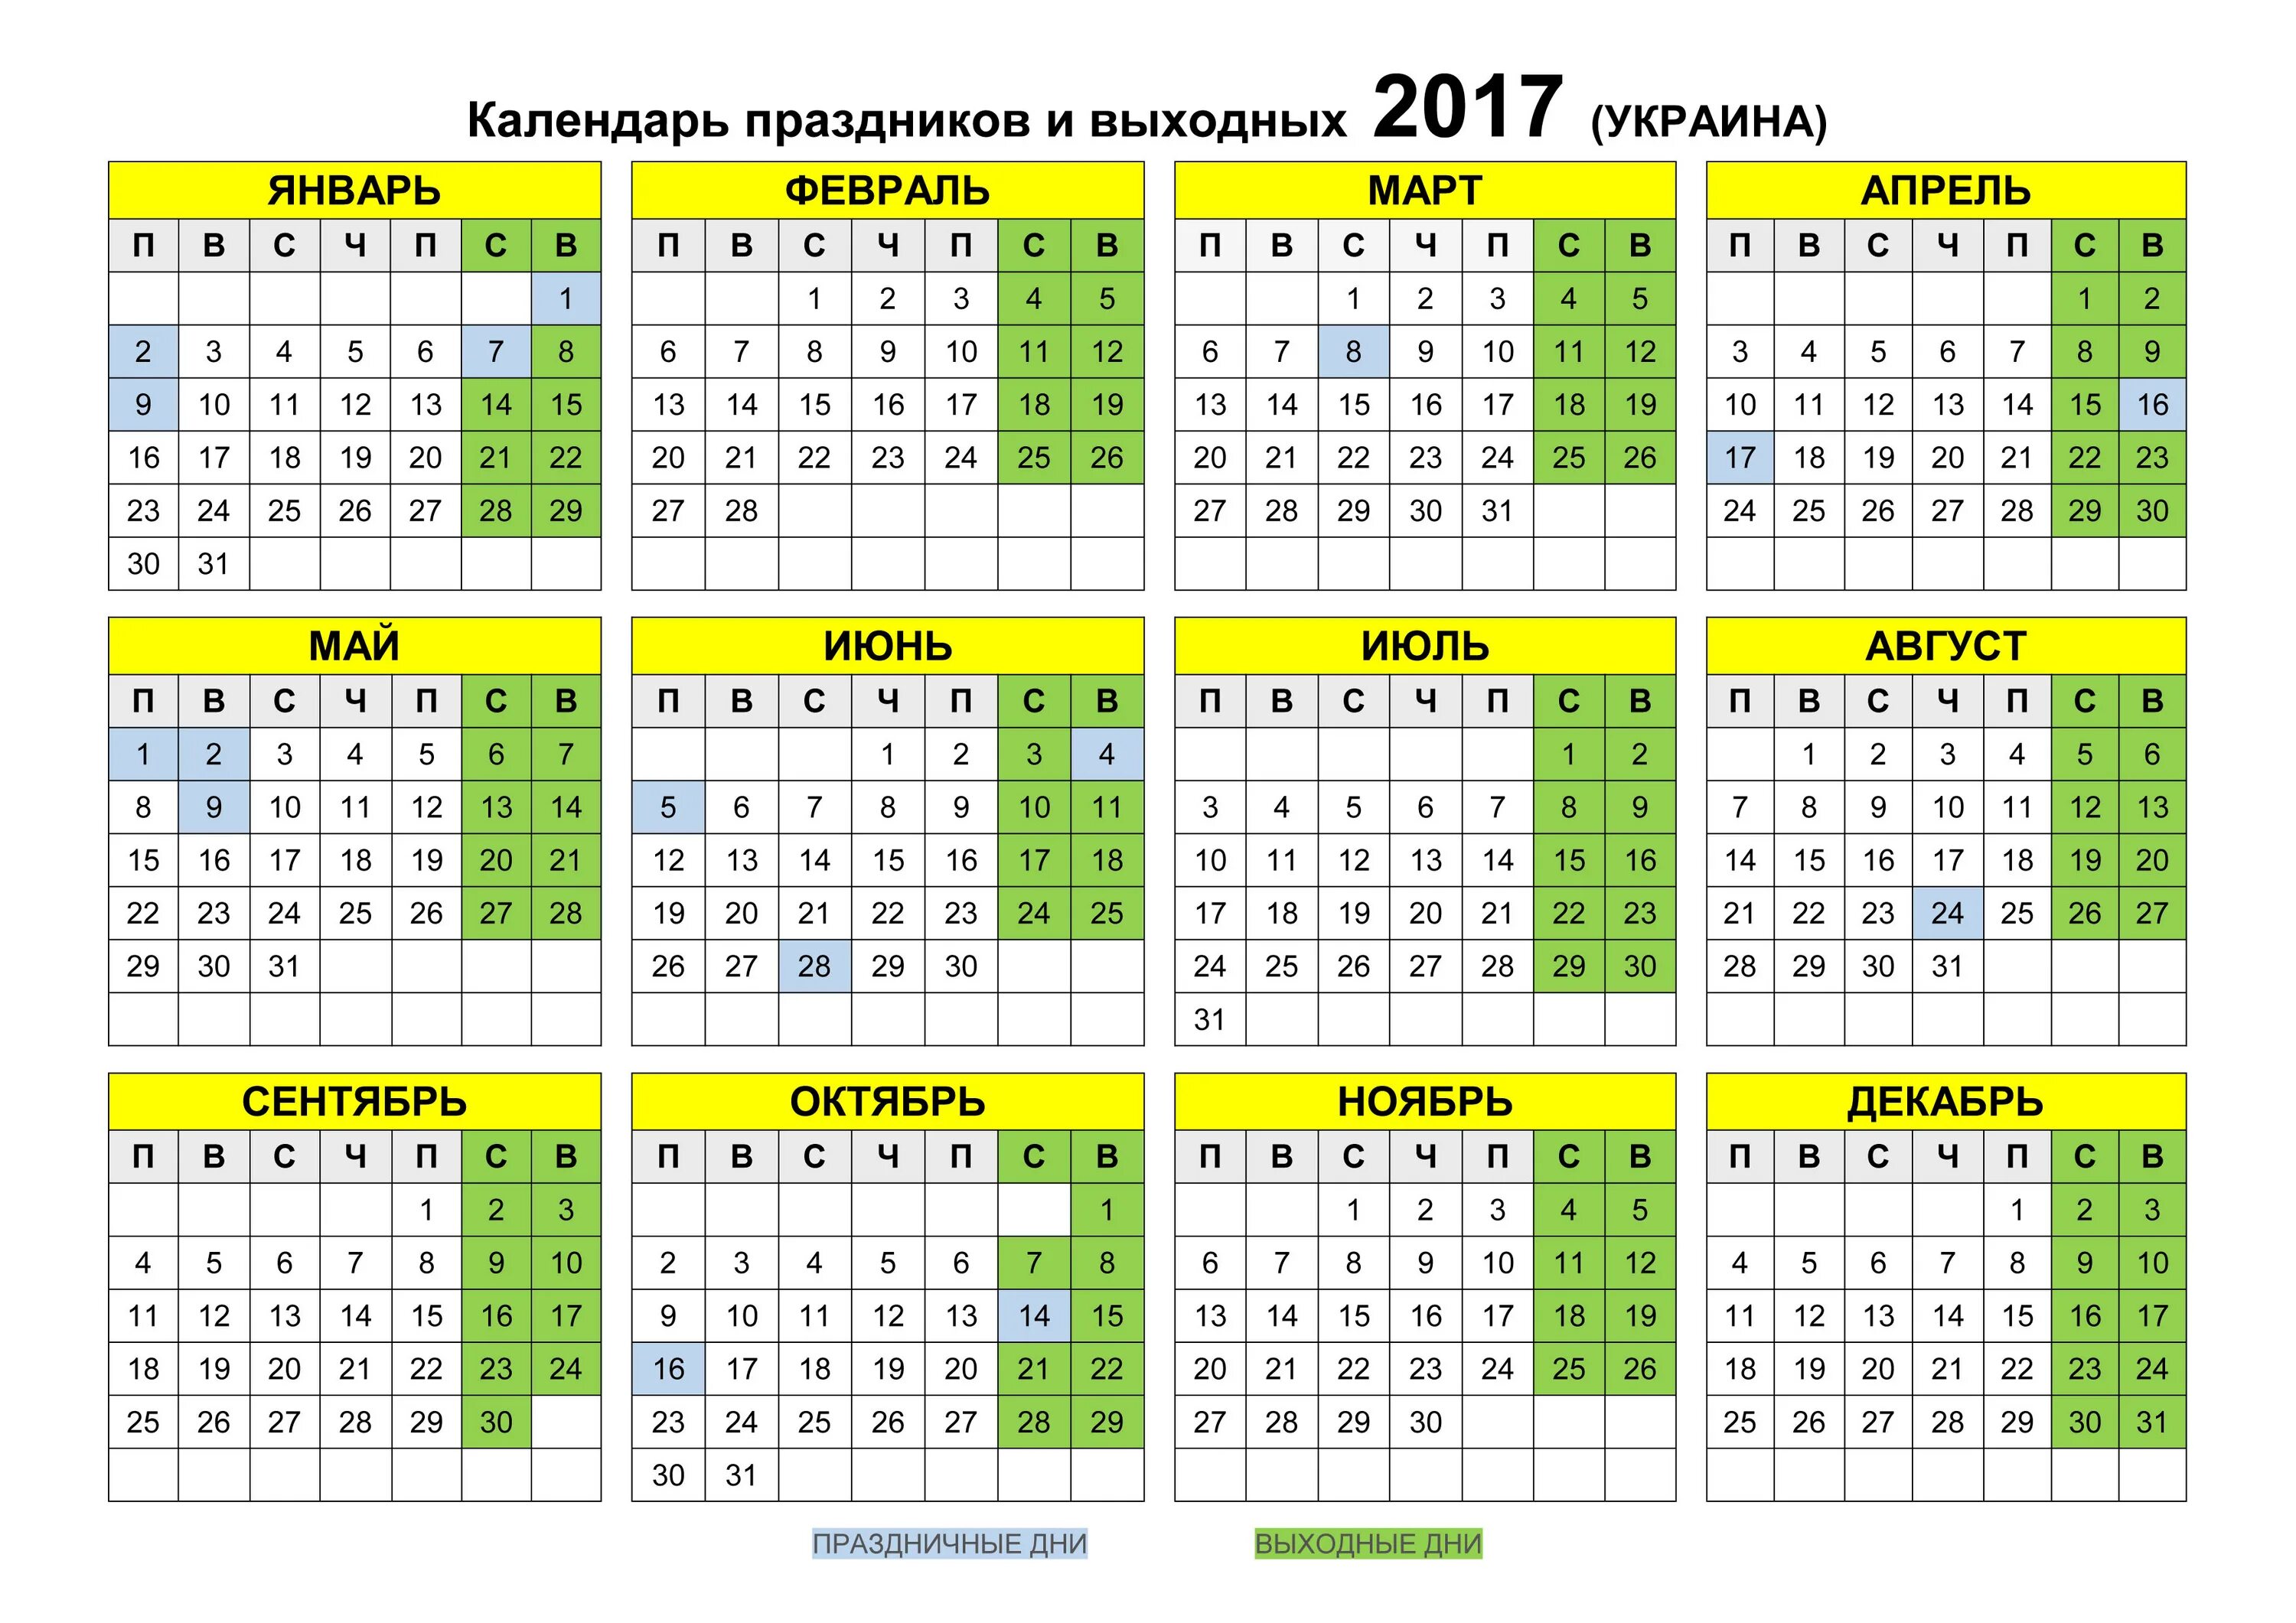 Календарь выходных 2017 году. Календарь 2017 года. Календарь на 2017 год с праздниками. Производственный календарь 2017 года. Календарь 2017г.по месяцам.